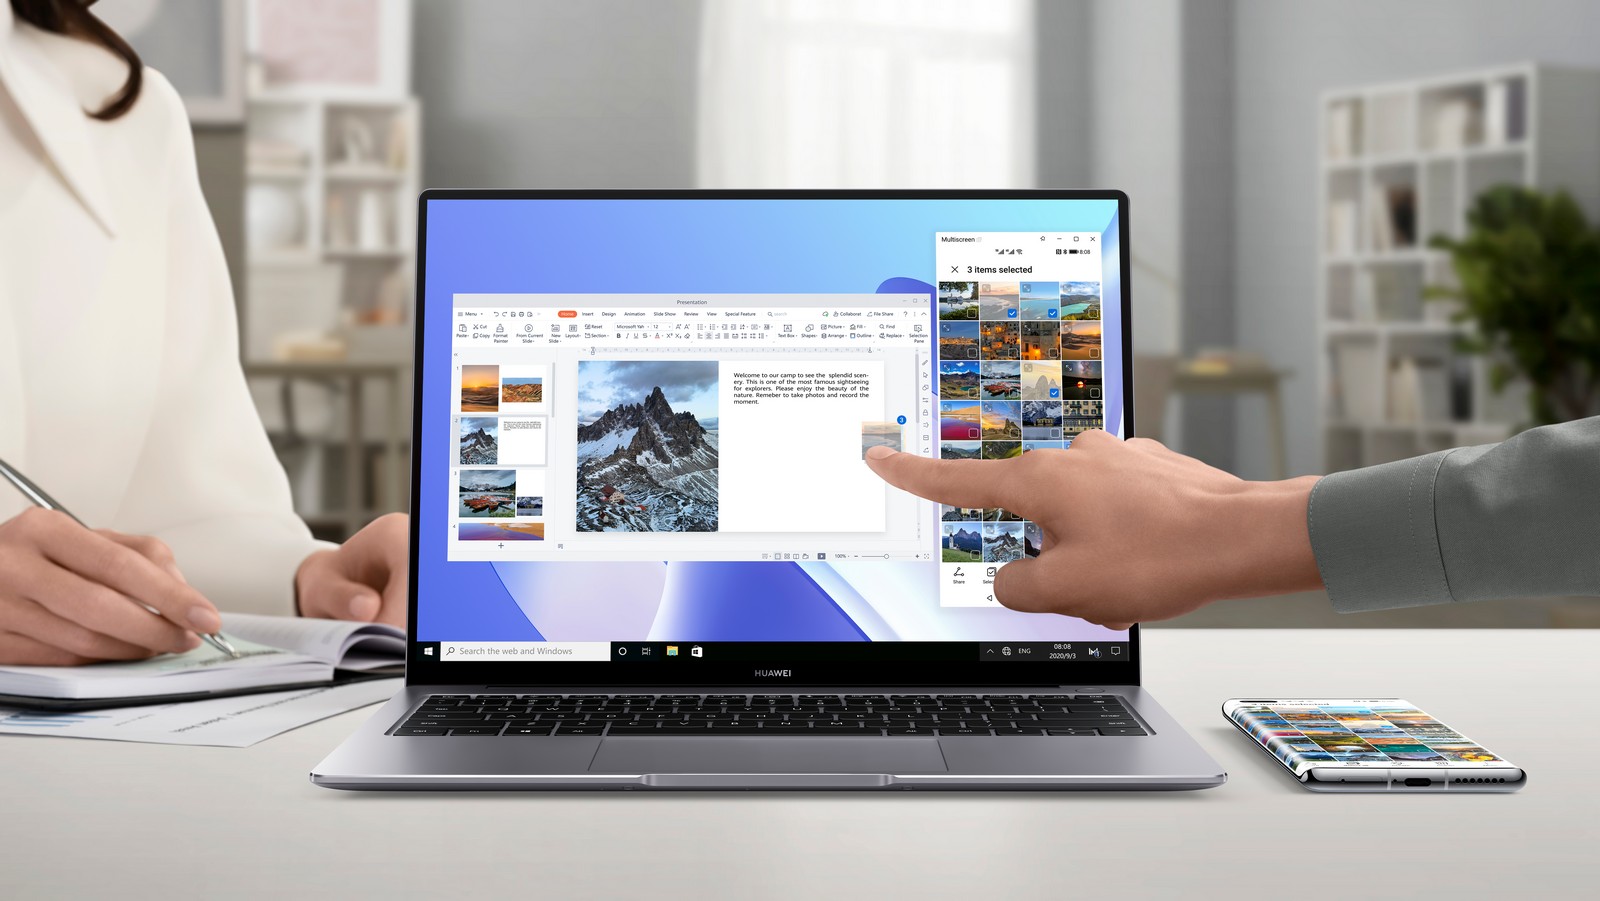 HUAWEI MateBook 14 hứa hẹn là chiếc laptop toàn diện cho hiệu năng và tính di động